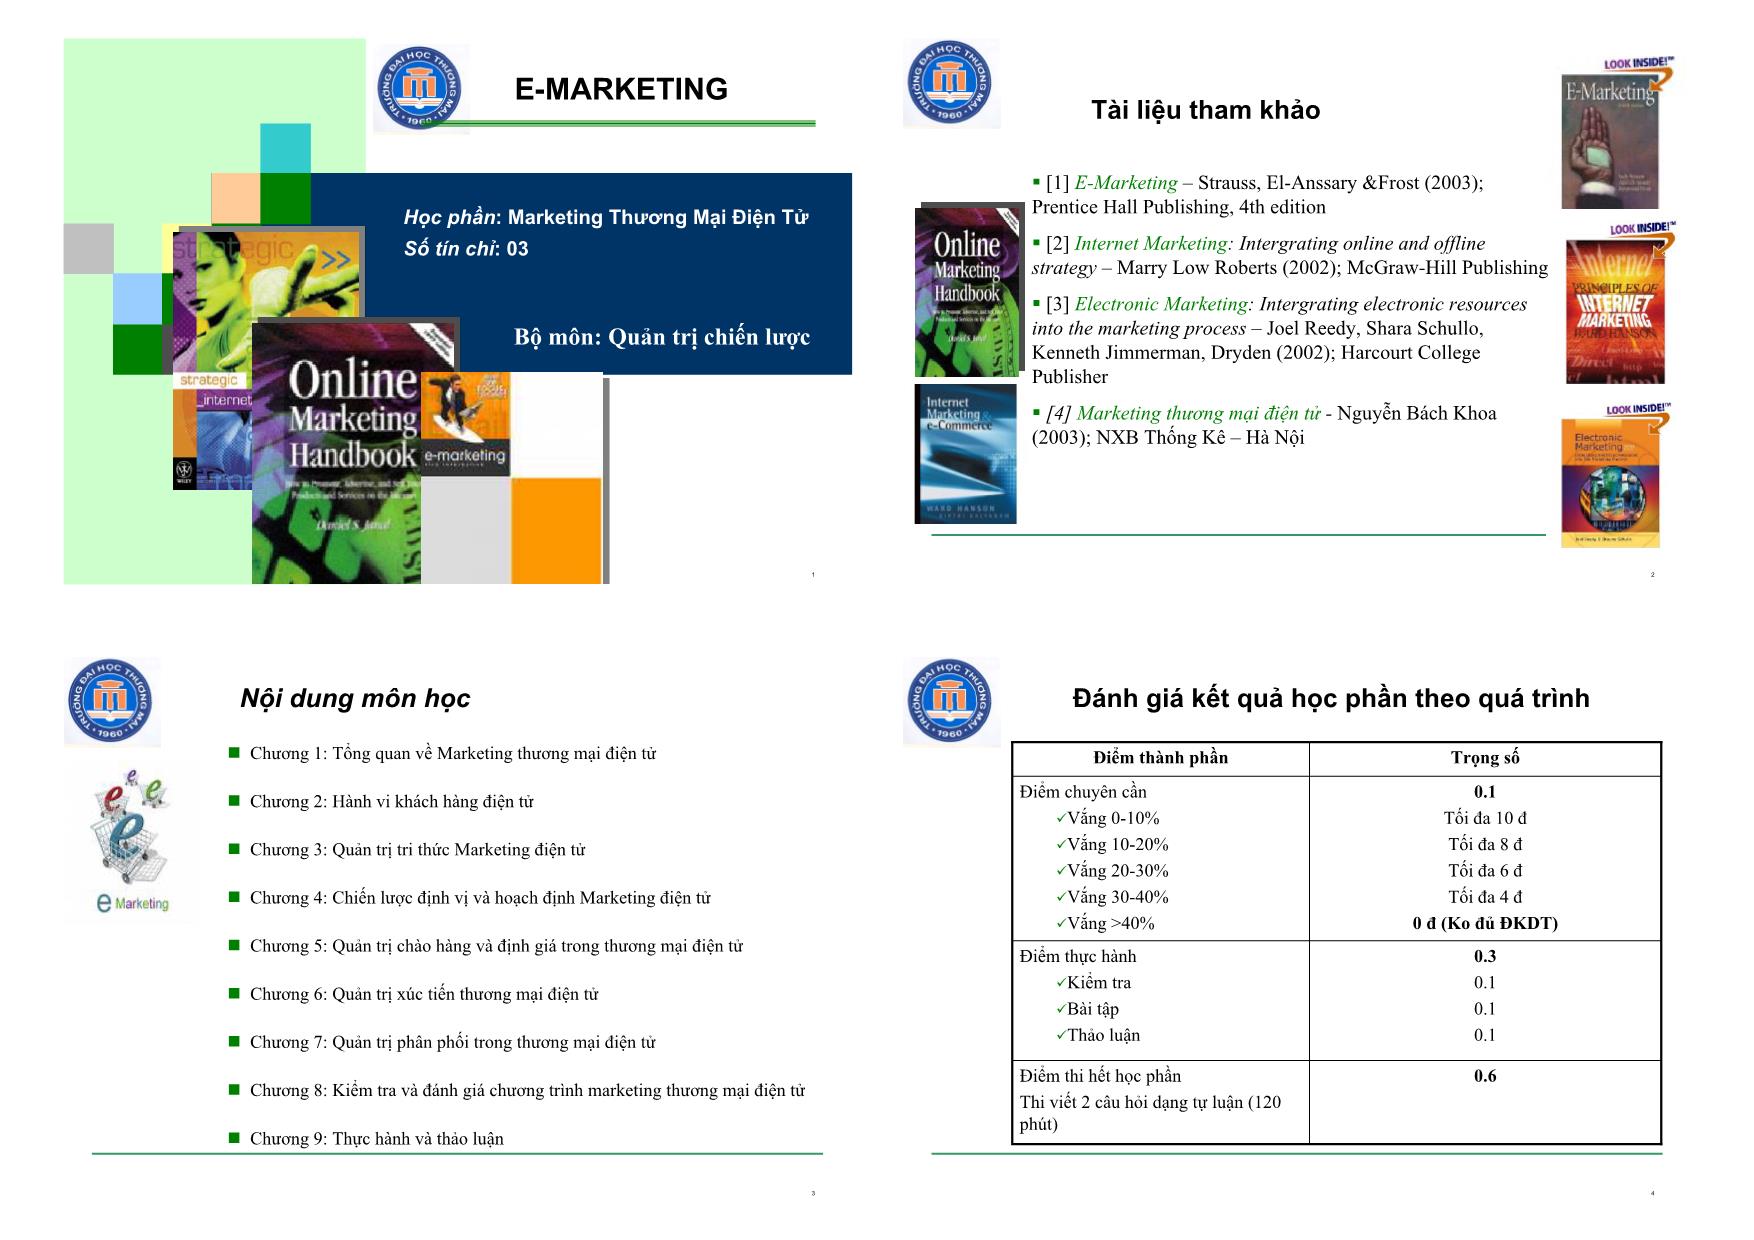 Quản trị chiến lược - Marketing thương mại điện tử trang 1